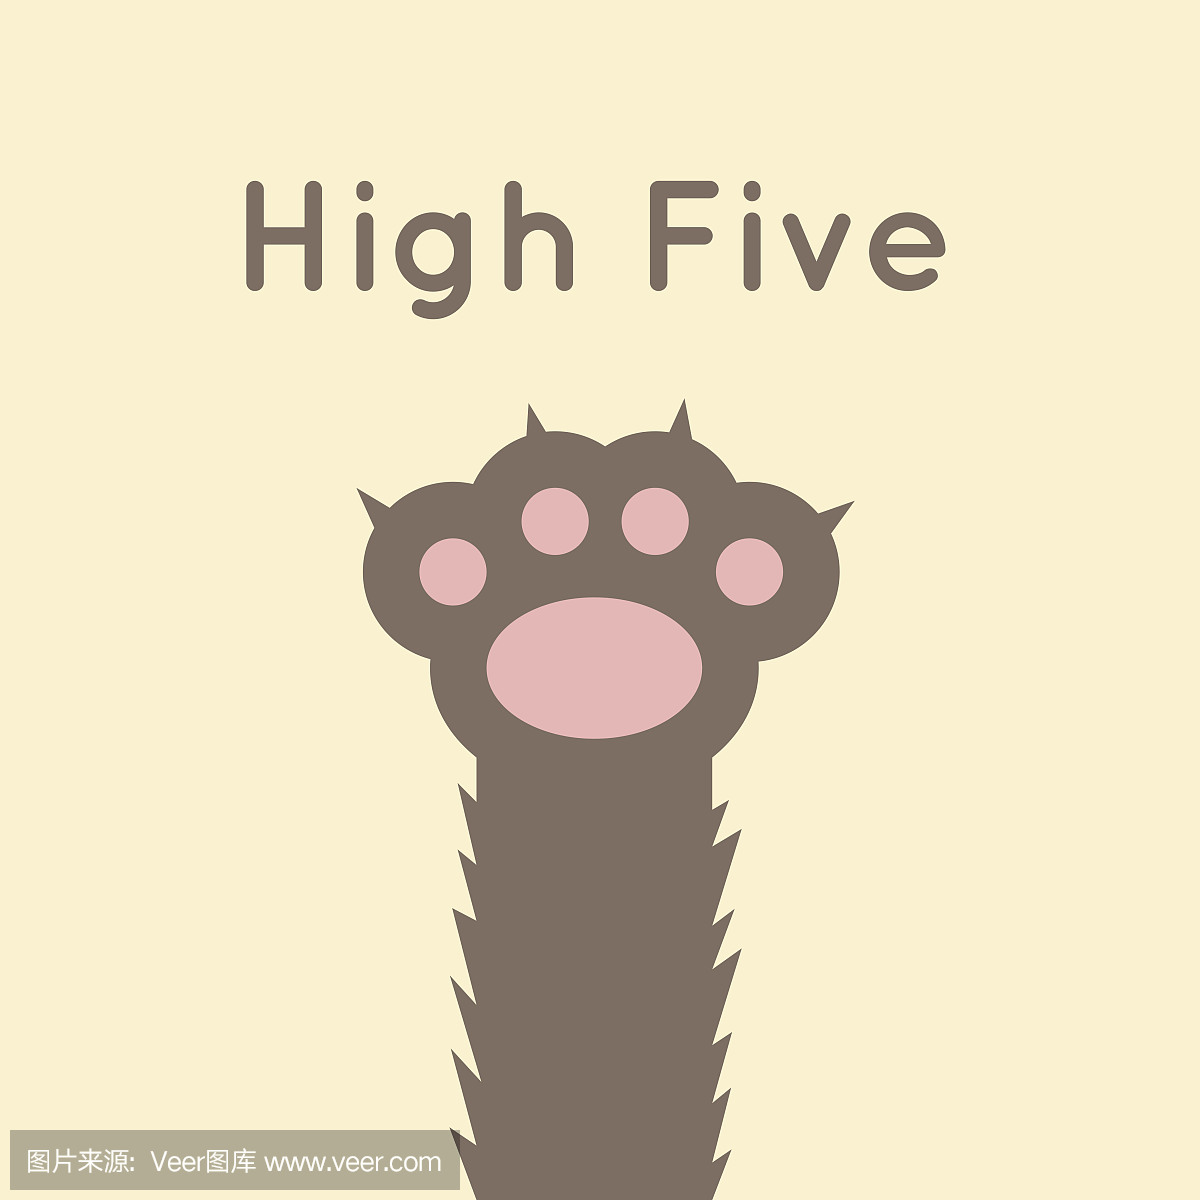 猫爪作为高五标志